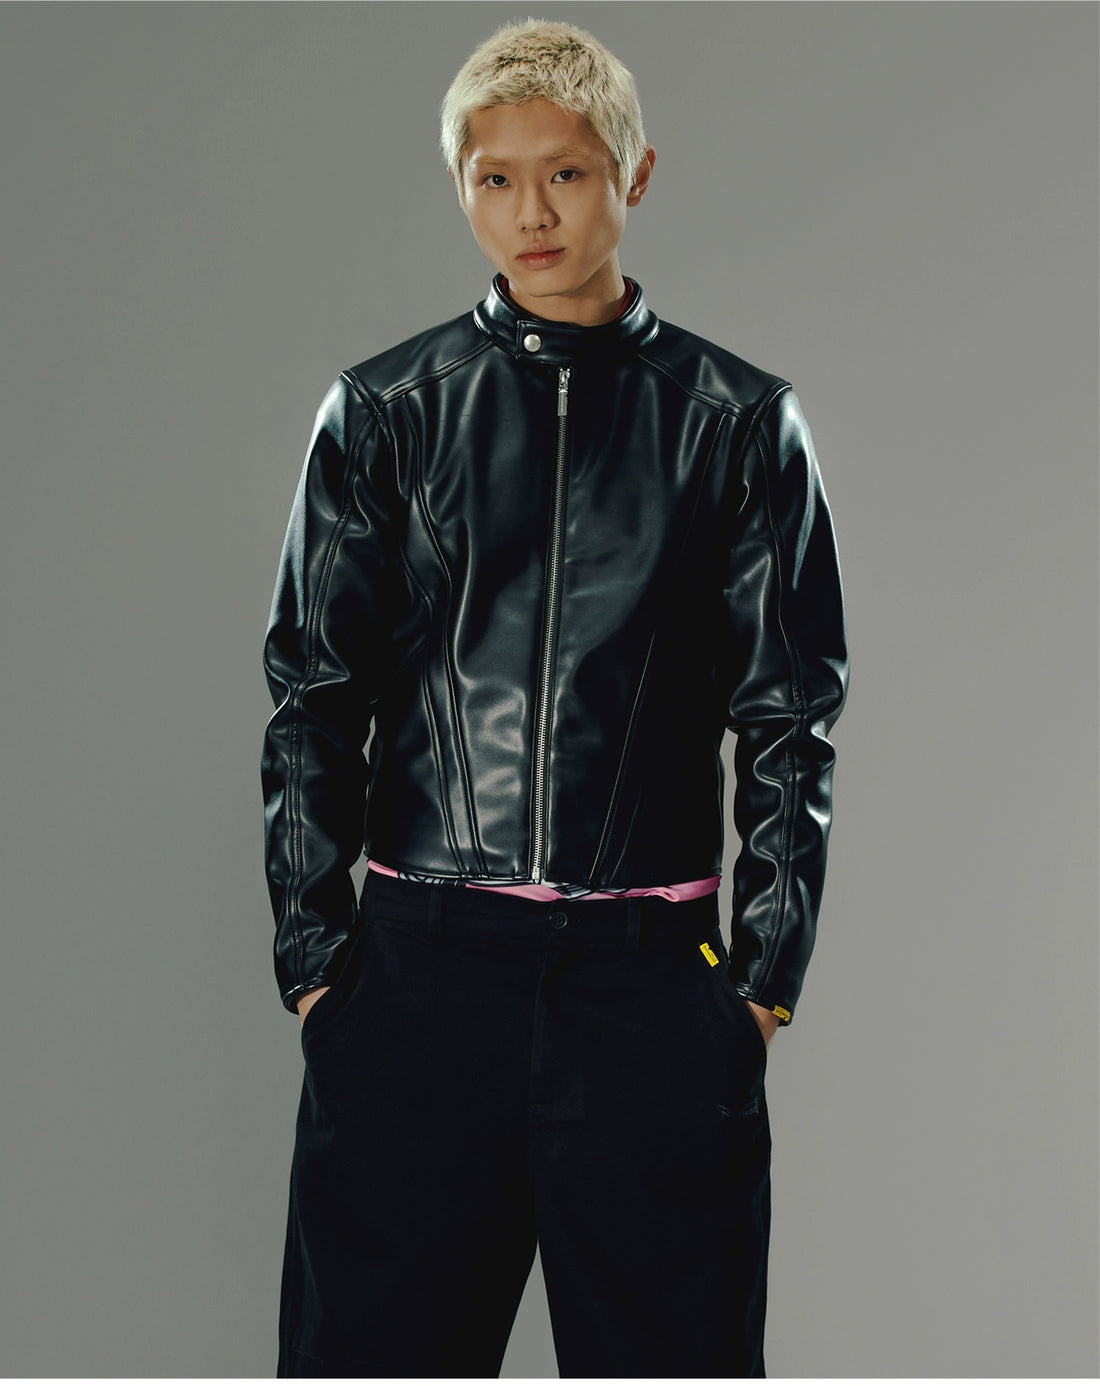 Black Paneled Leather Jacket - CHINASQUAD